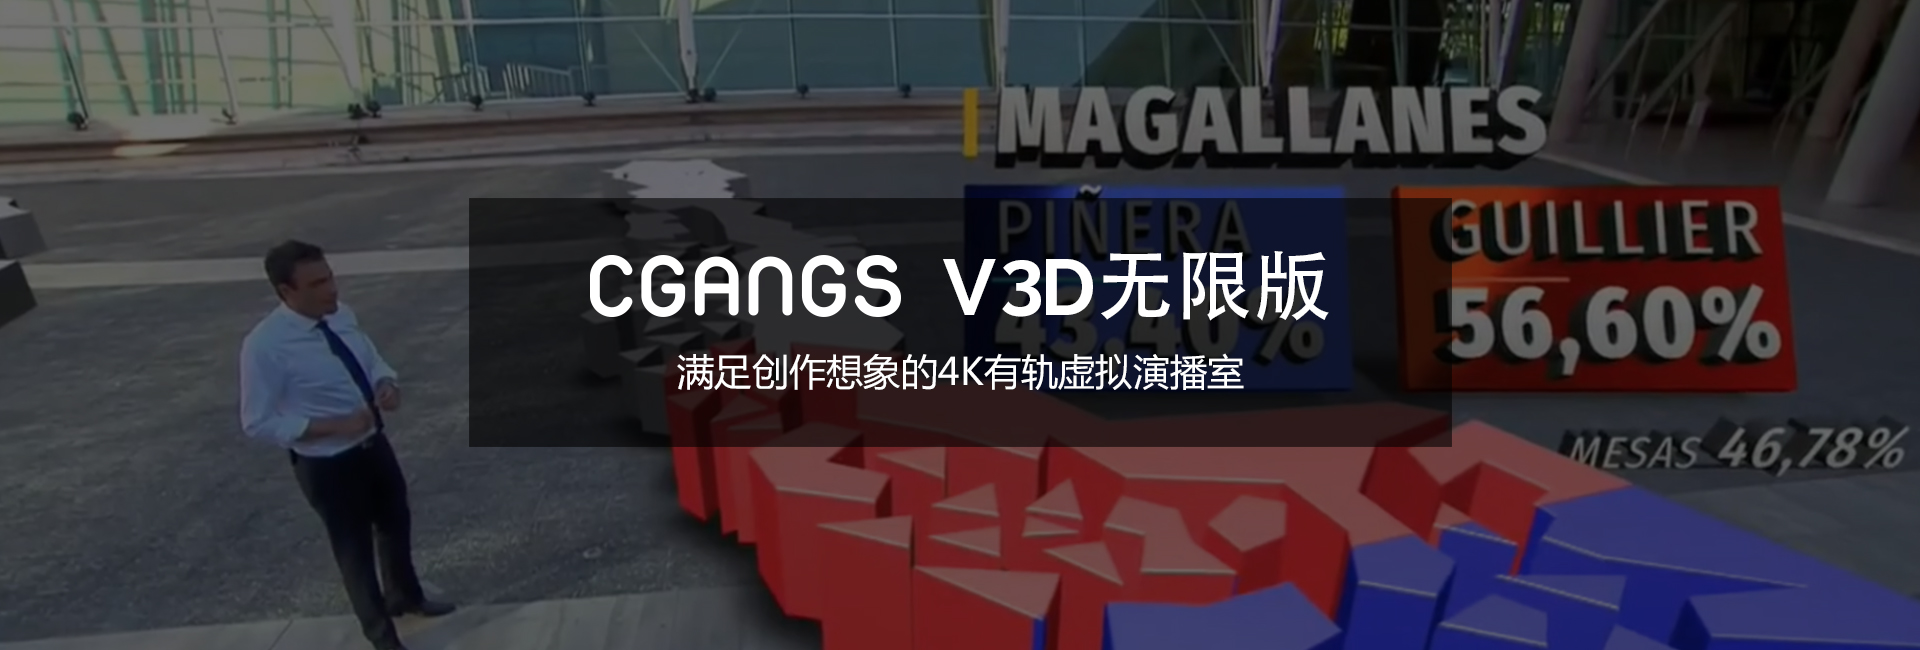 点我，了解更多关于Cgangs V3D无限版的内容